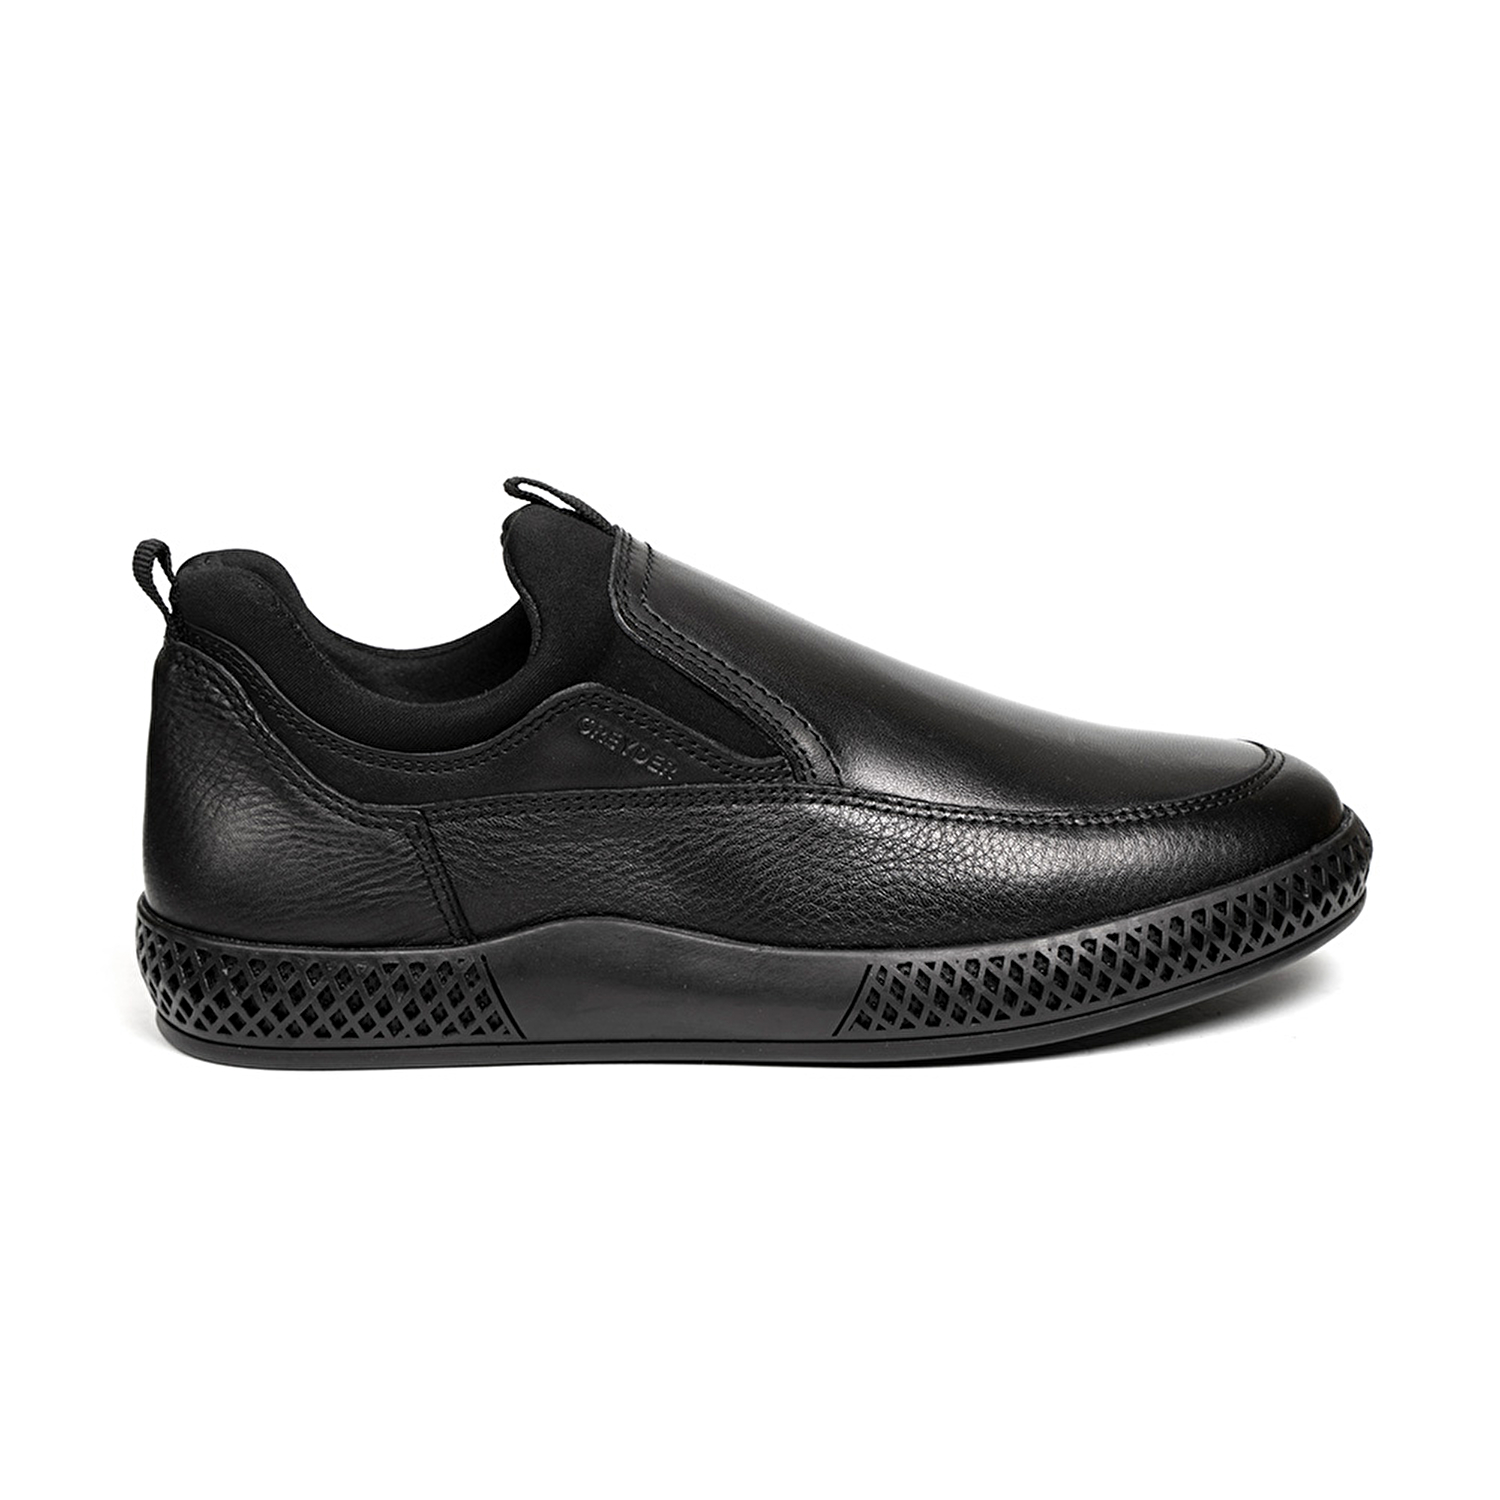 Erkek Siyah Hakiki Deri Comfort Ayakkabı 2K1CA13643-1